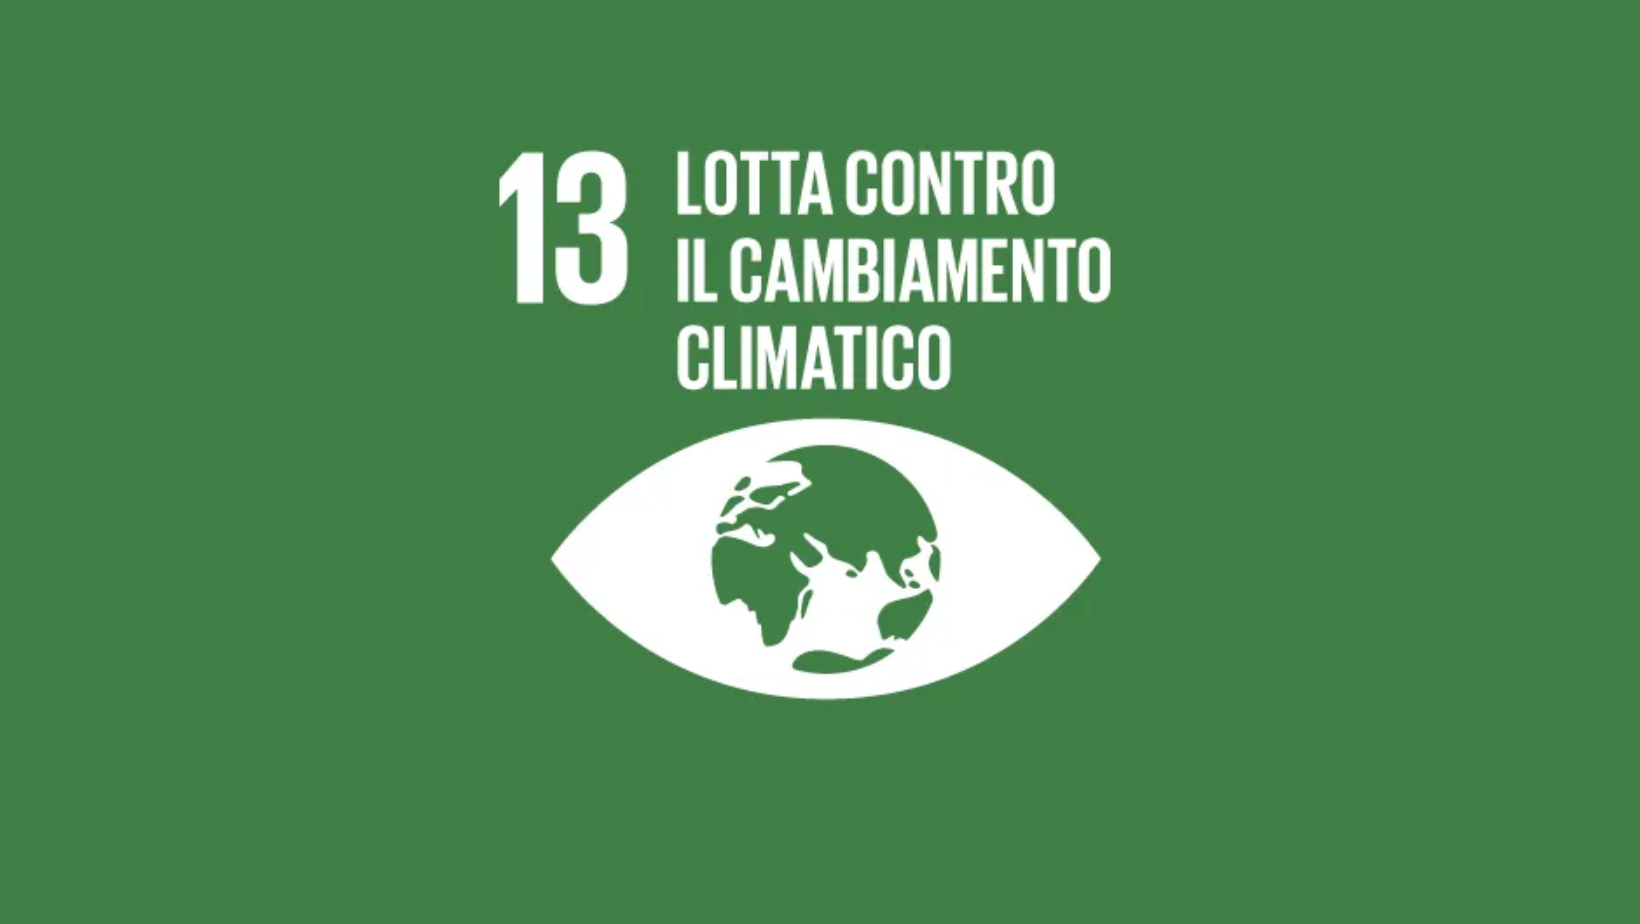 Obiettivo 13: Lotta contro il cambiamento climatico